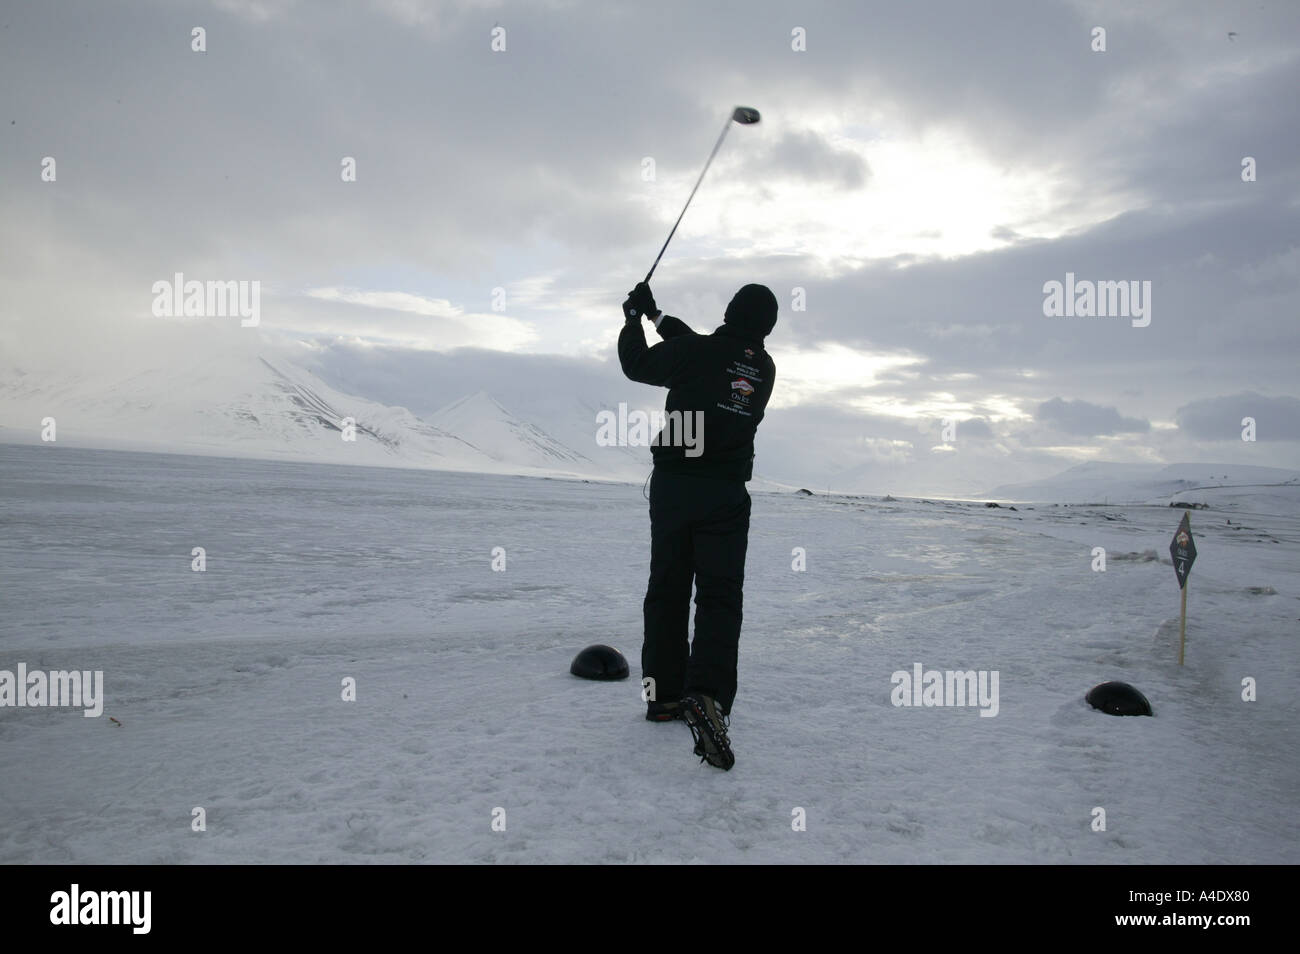 Steve Cowle compitiendo en el campeonato de golf 2004 Drambuie hielo en Svalbard, Noruega. Foto de stock